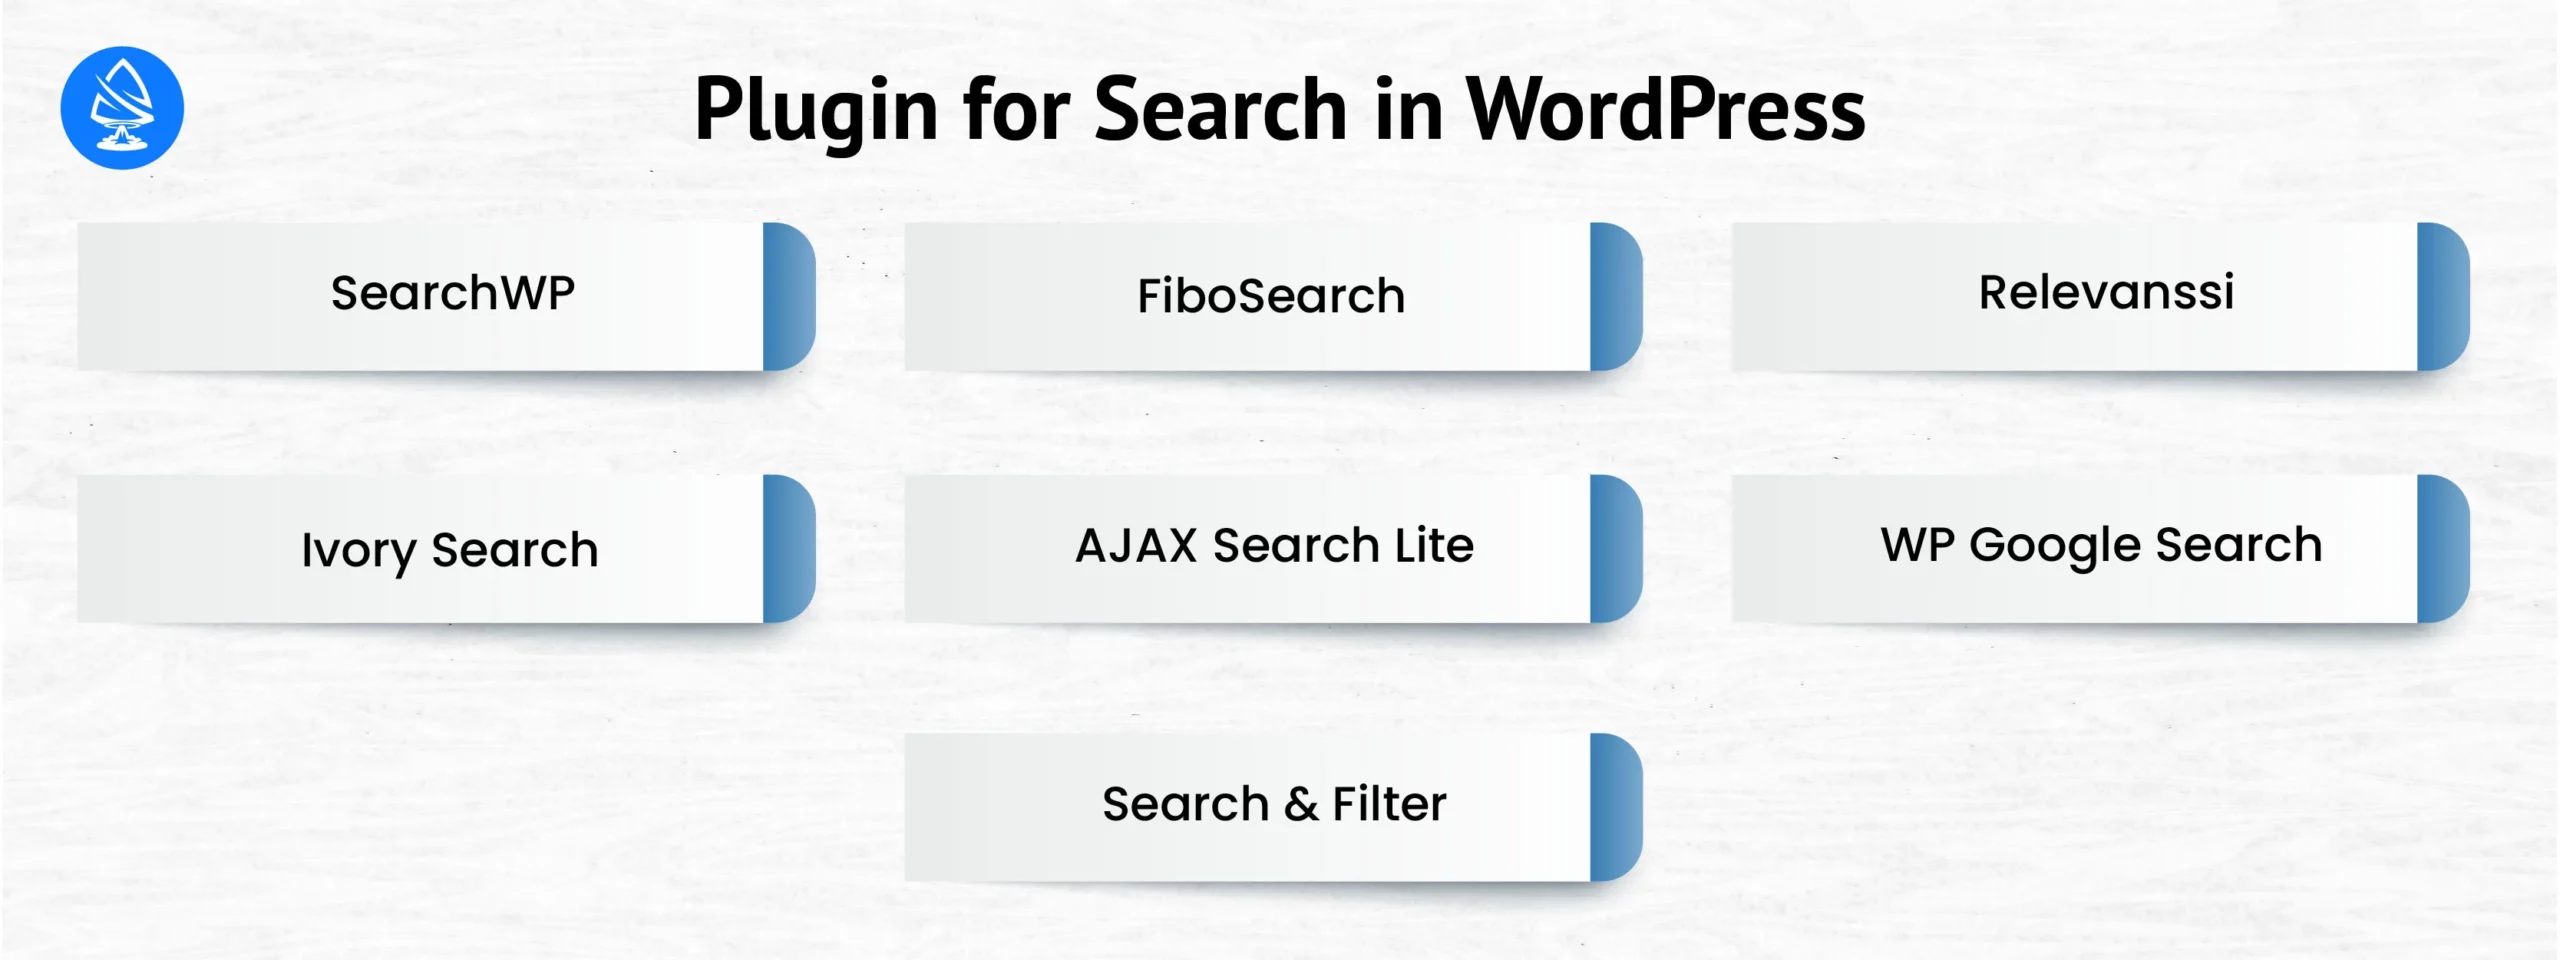 Plugin for Search in WordPress